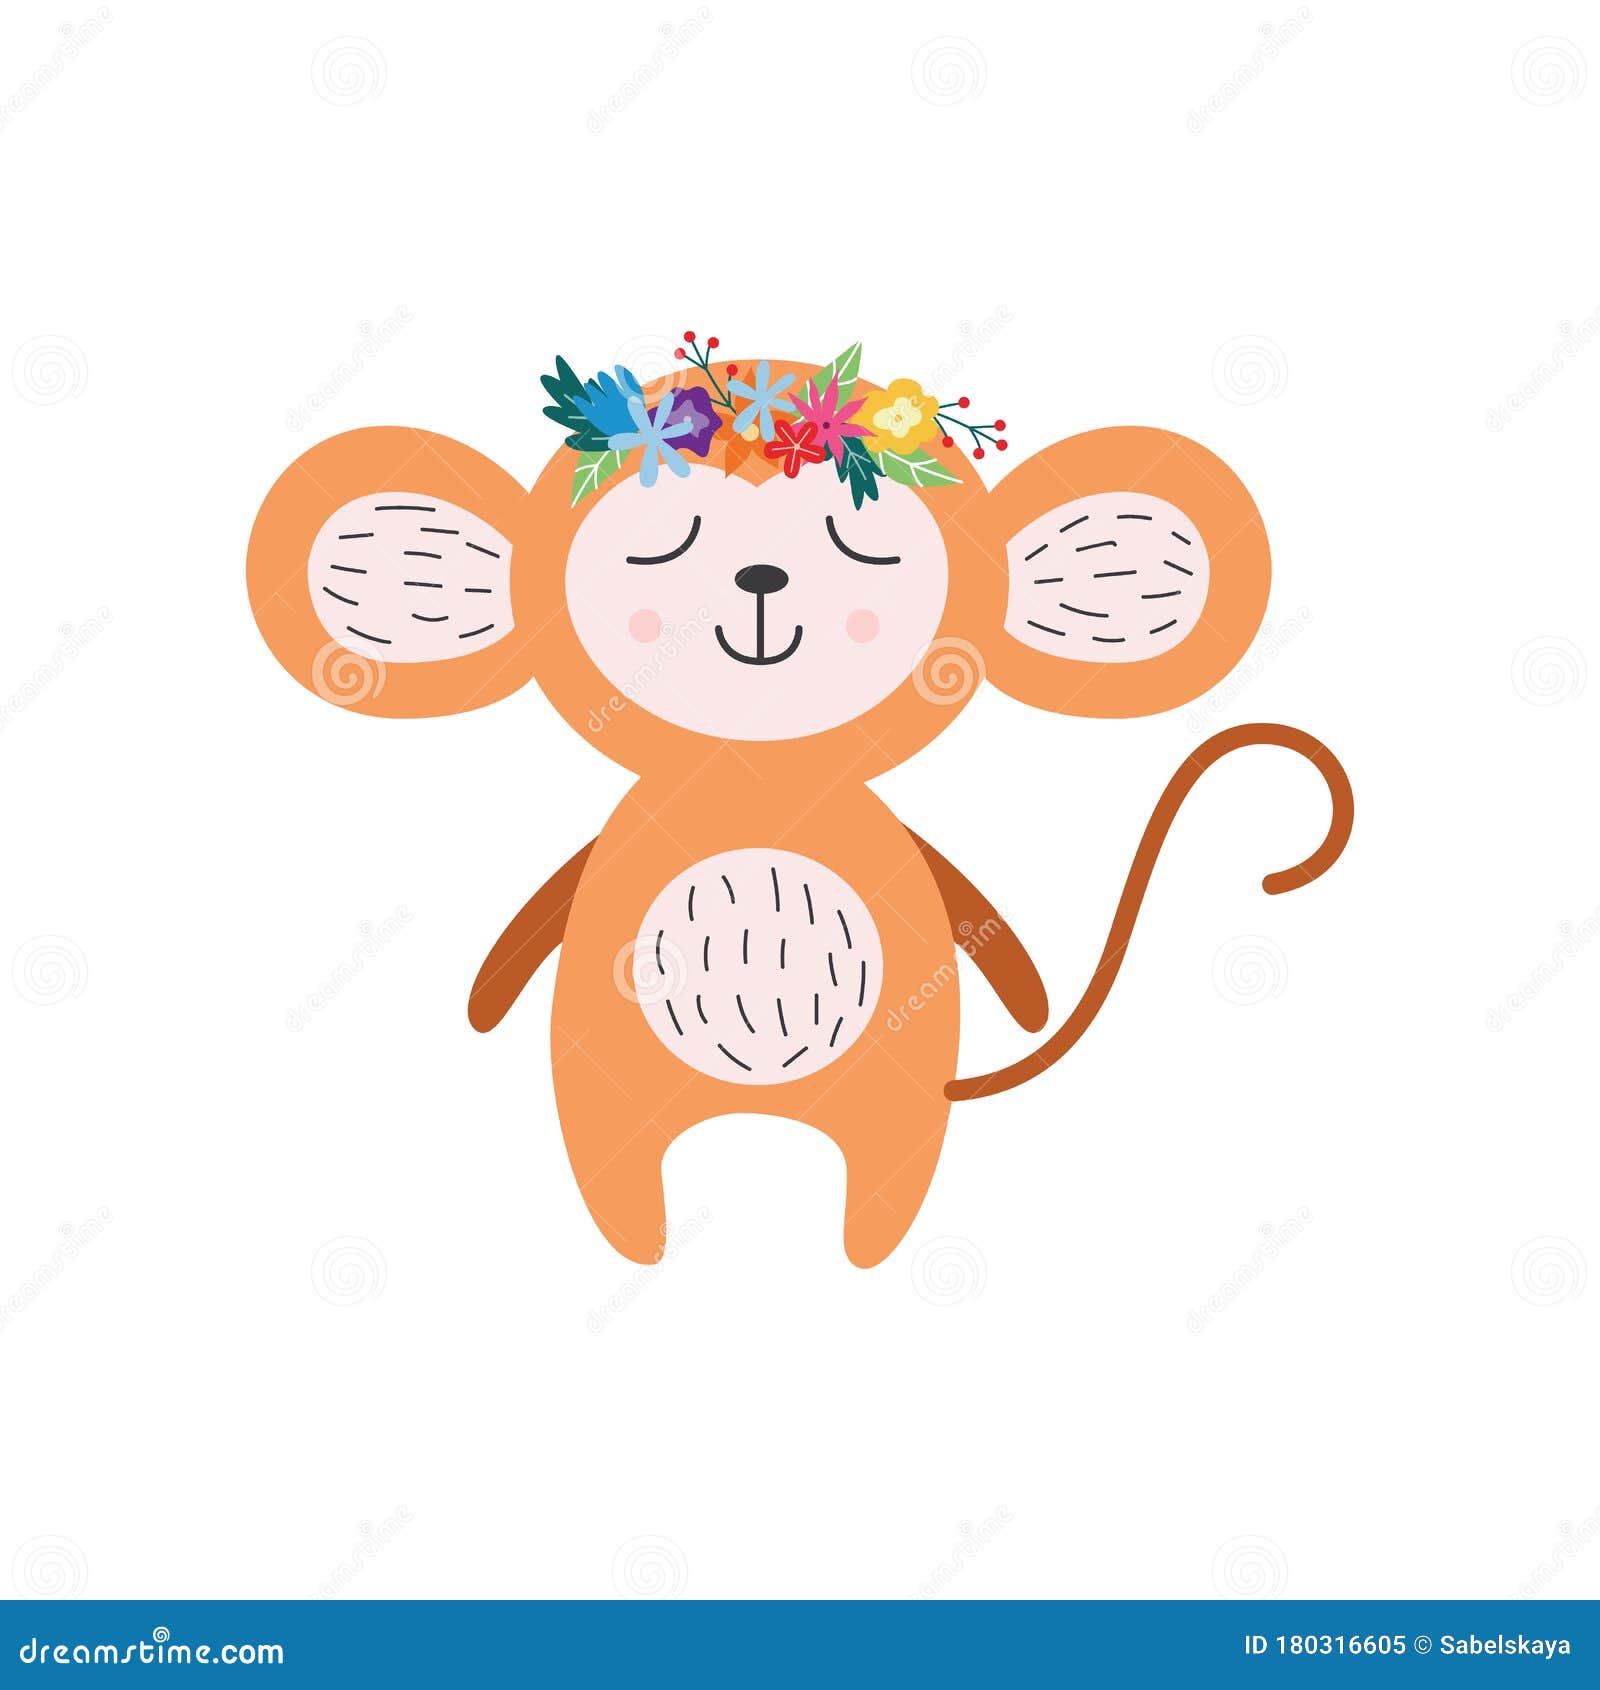 Hãy xem bức ảnh về khỉ đáng yêu này và bạn sẽ không thể ngừng cười. Với vẻ ngoài đáng yêu và hành động khá dễ thương, chú khỉ nhỏ này chắc chắn sẽ làm bạn phải thích thú.